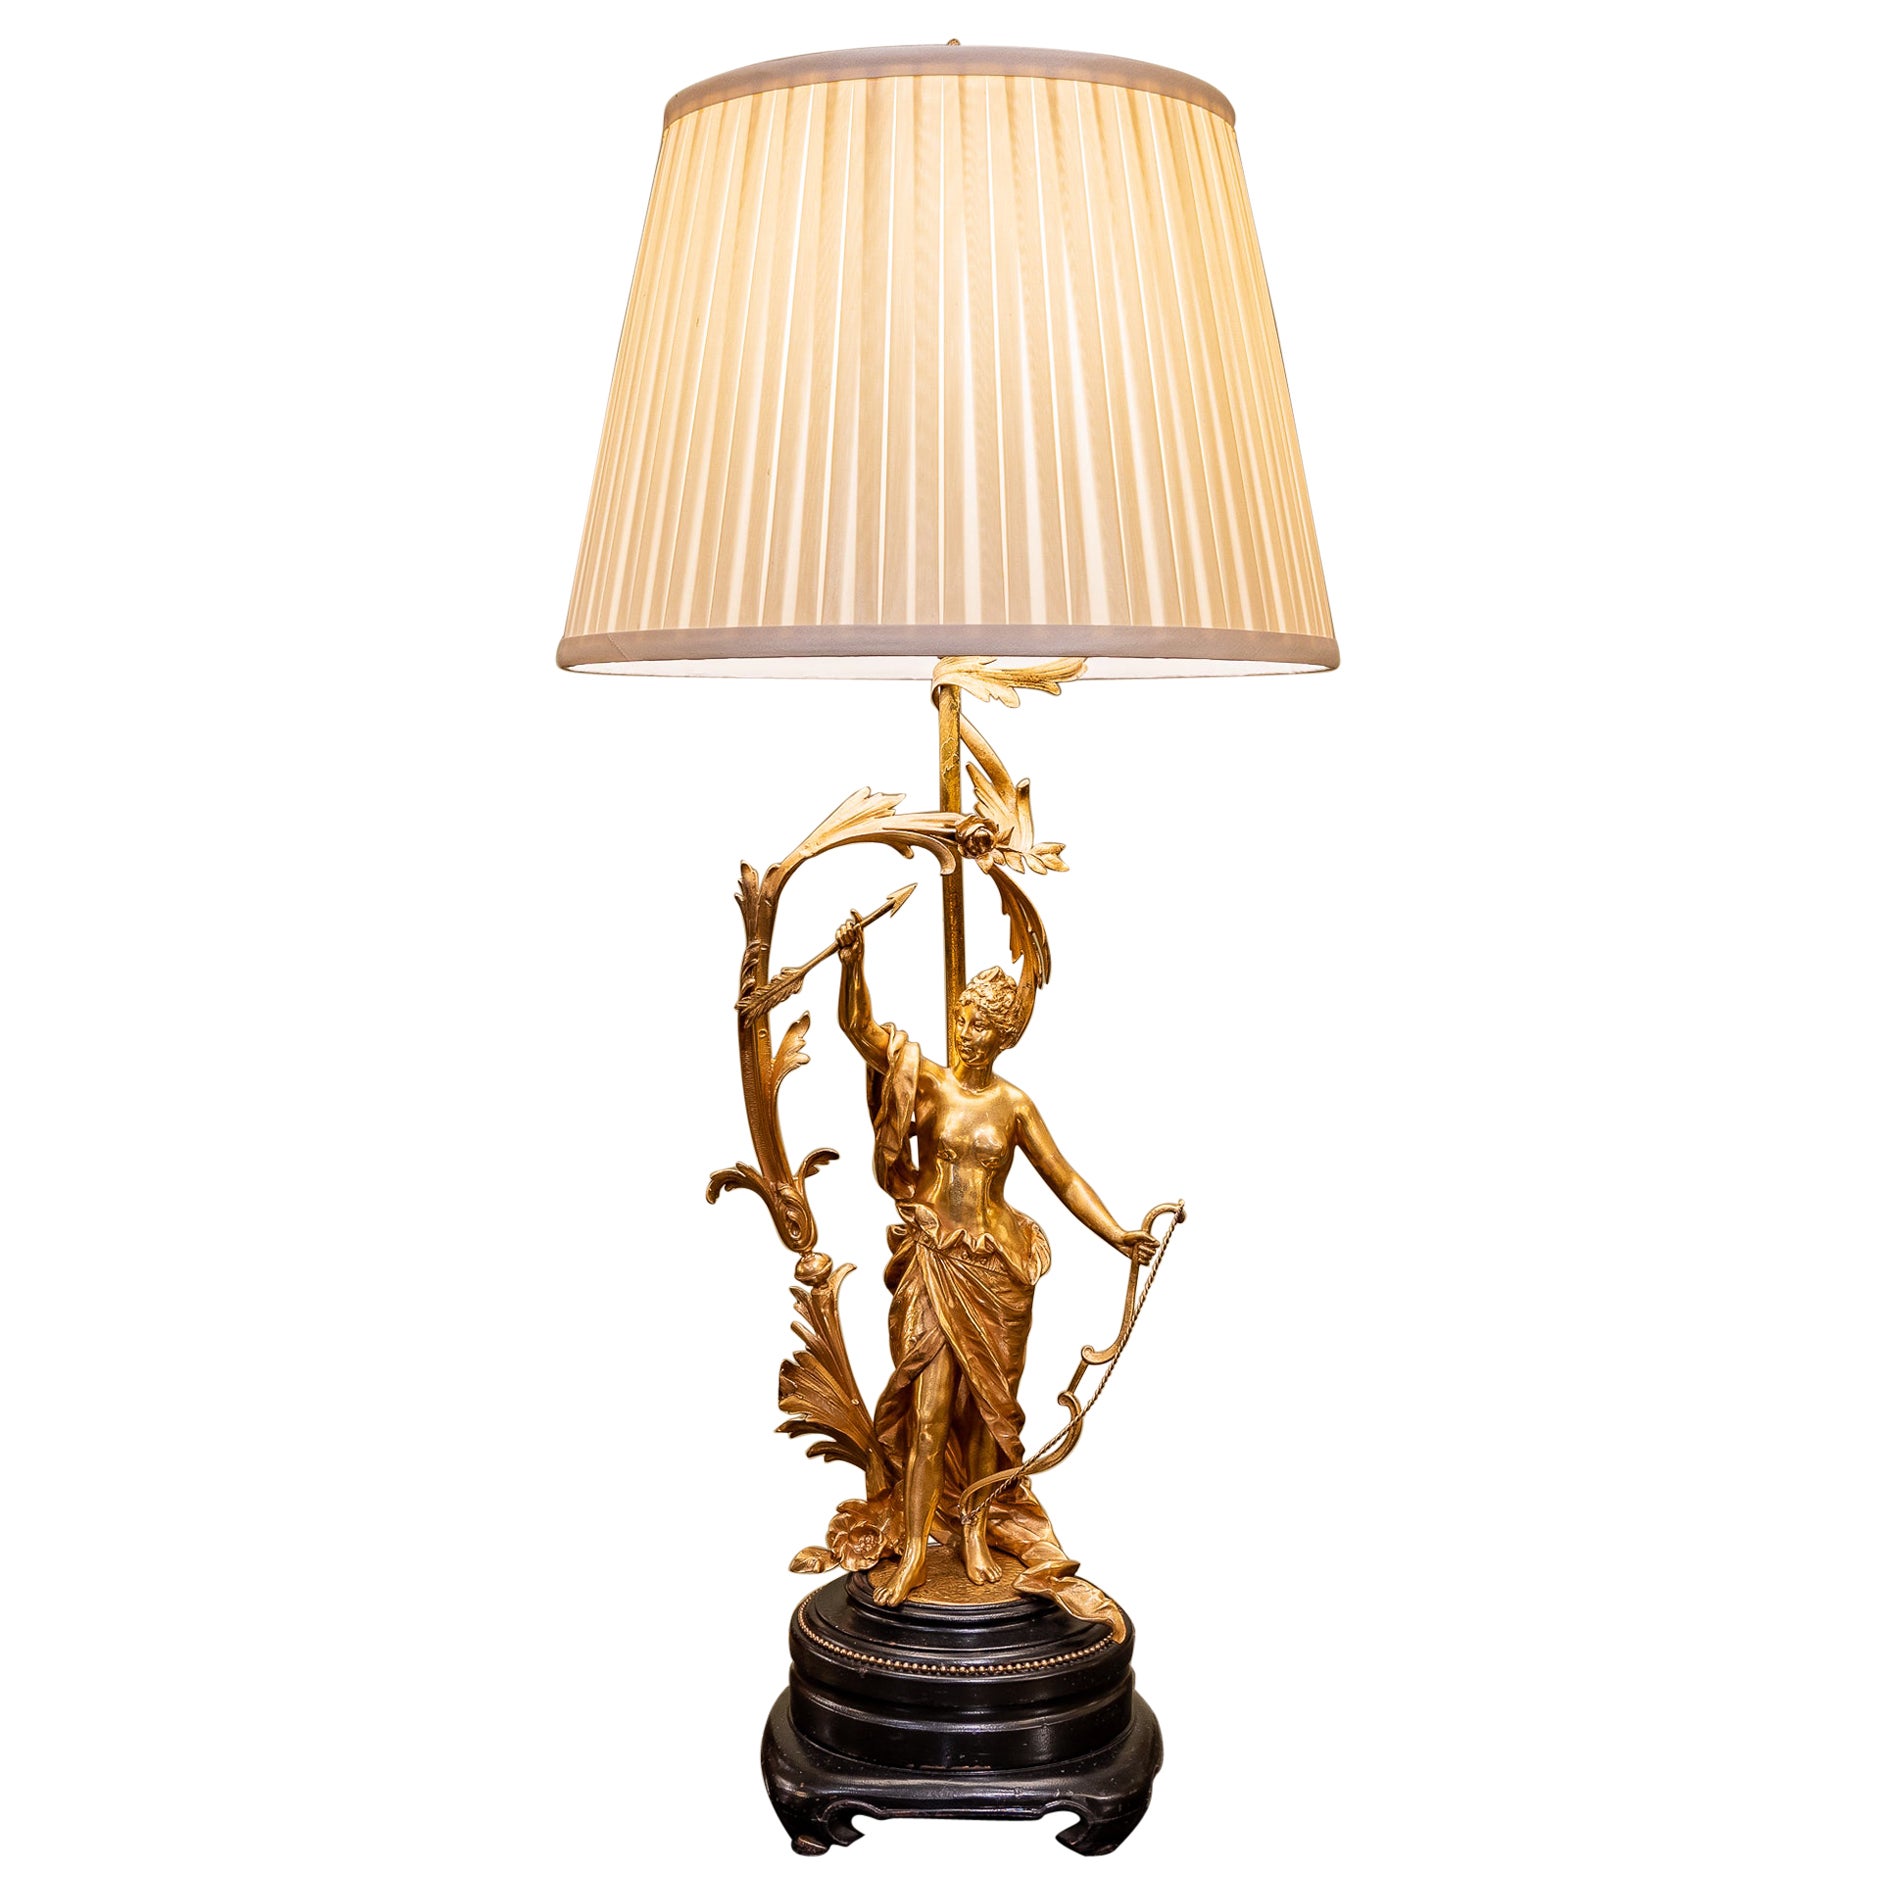 Lampe figurative en bronze doré du XIXe siècle signée Moreau